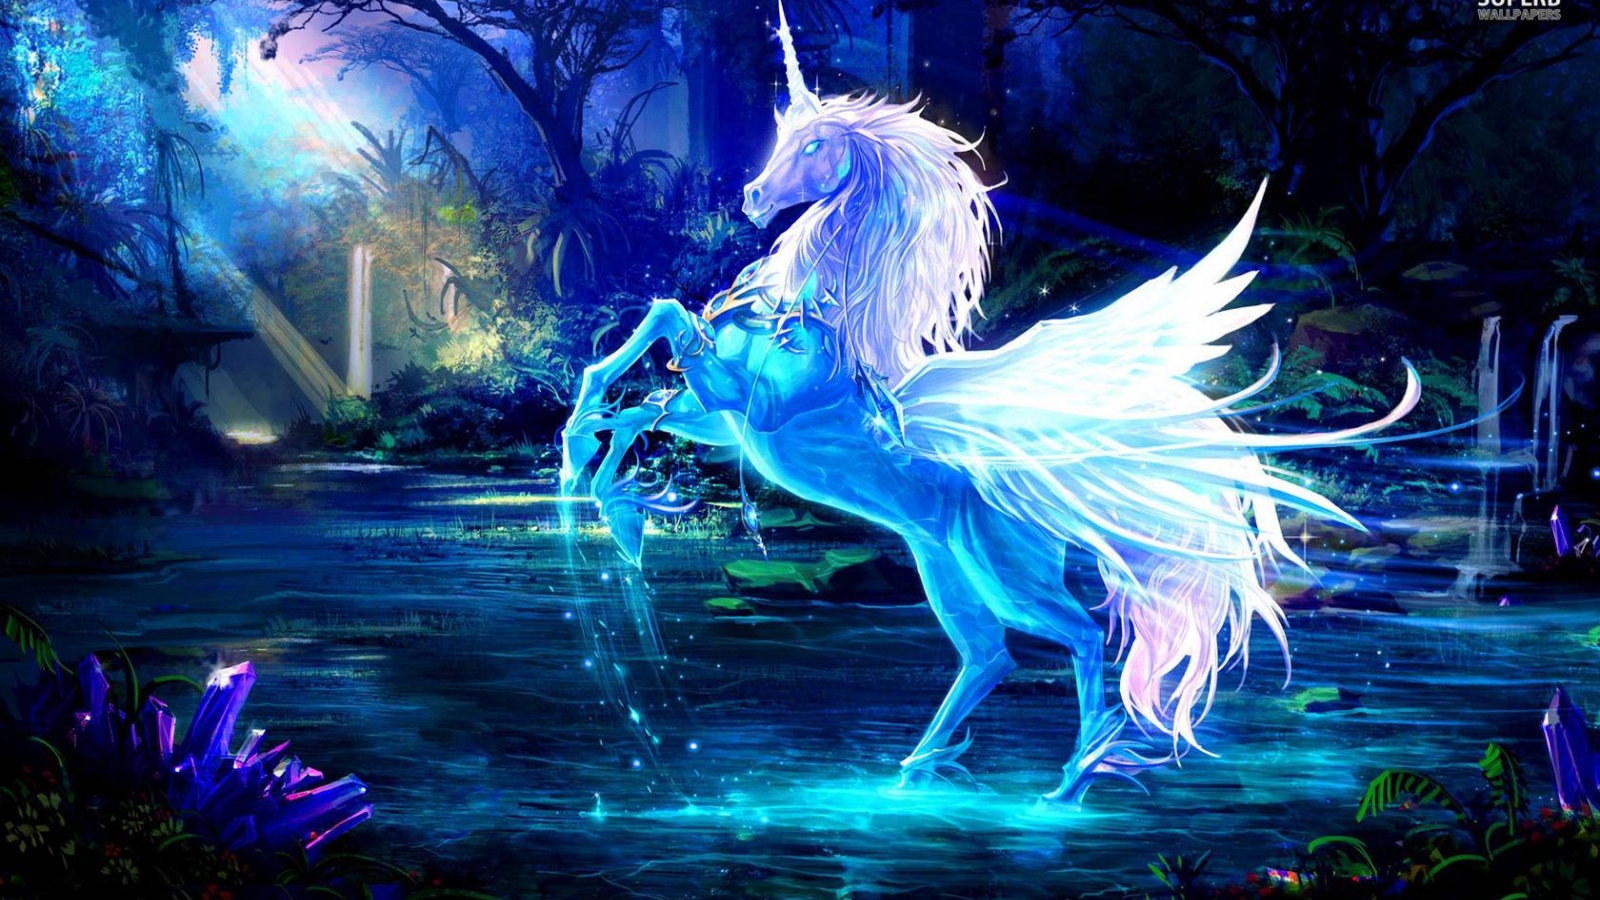 unicorno wallpaper hd,personaggio fittizio,creatura mitica,unicorno,cg artwork,mitologia